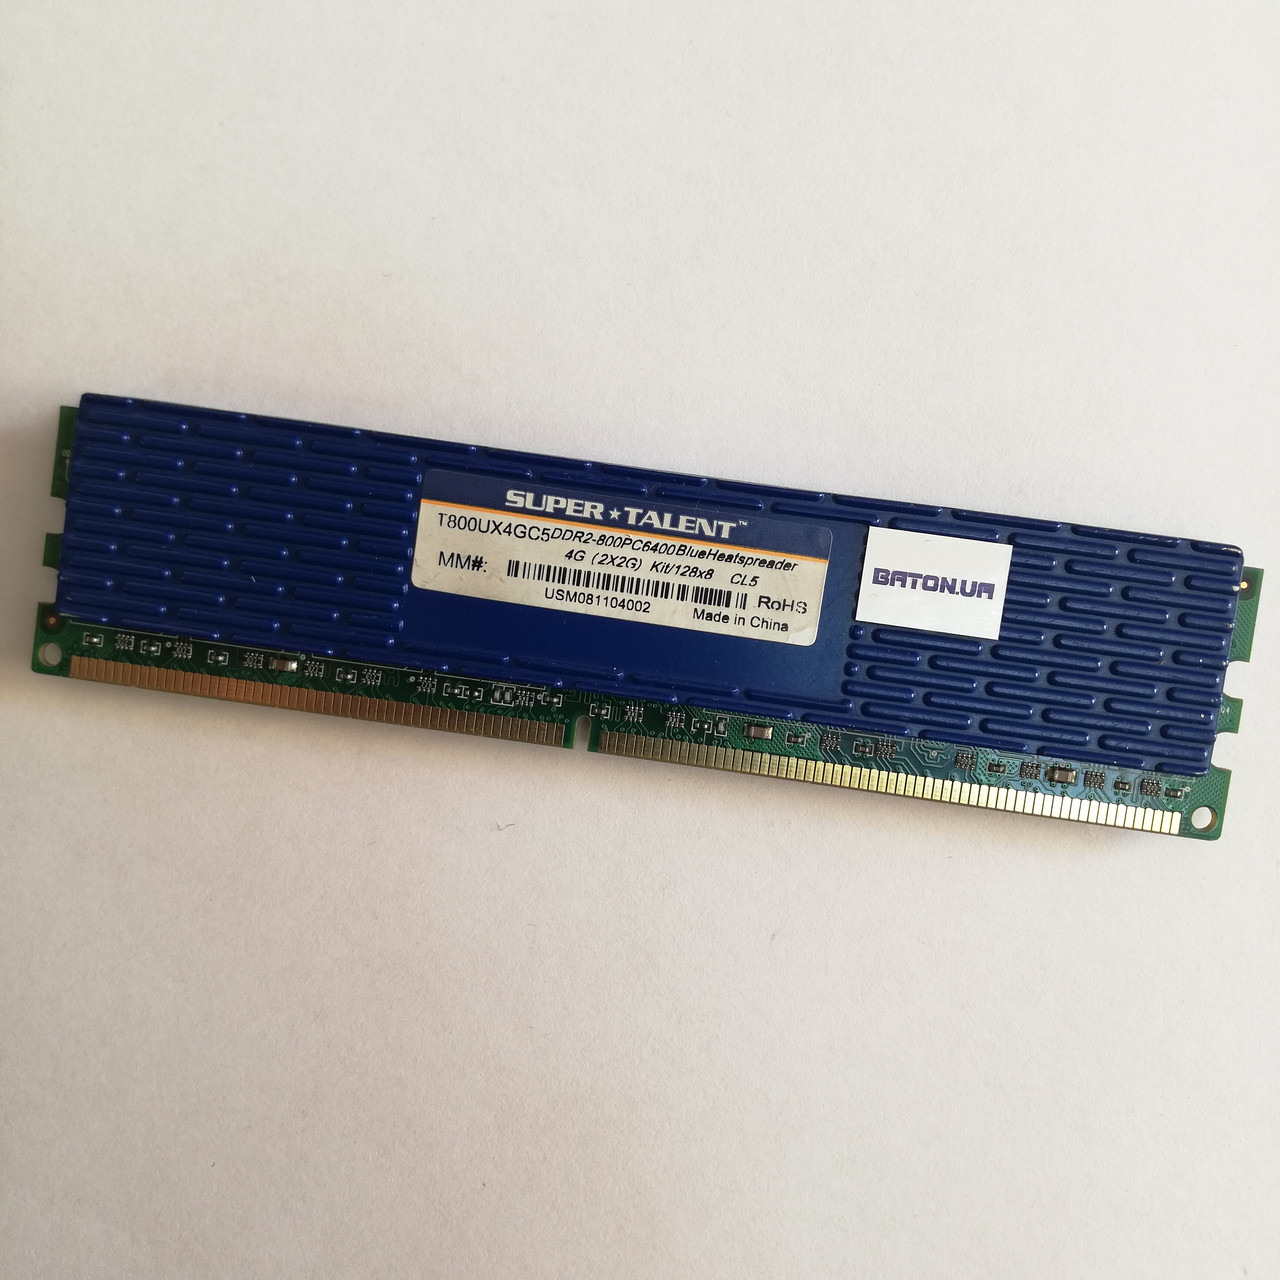 Ігрова оперативна пам'ять Super Talent DDR2 2Gb 800MHz PC2 6400U CL5 (T800UX4GC5) Б/В, фото 1